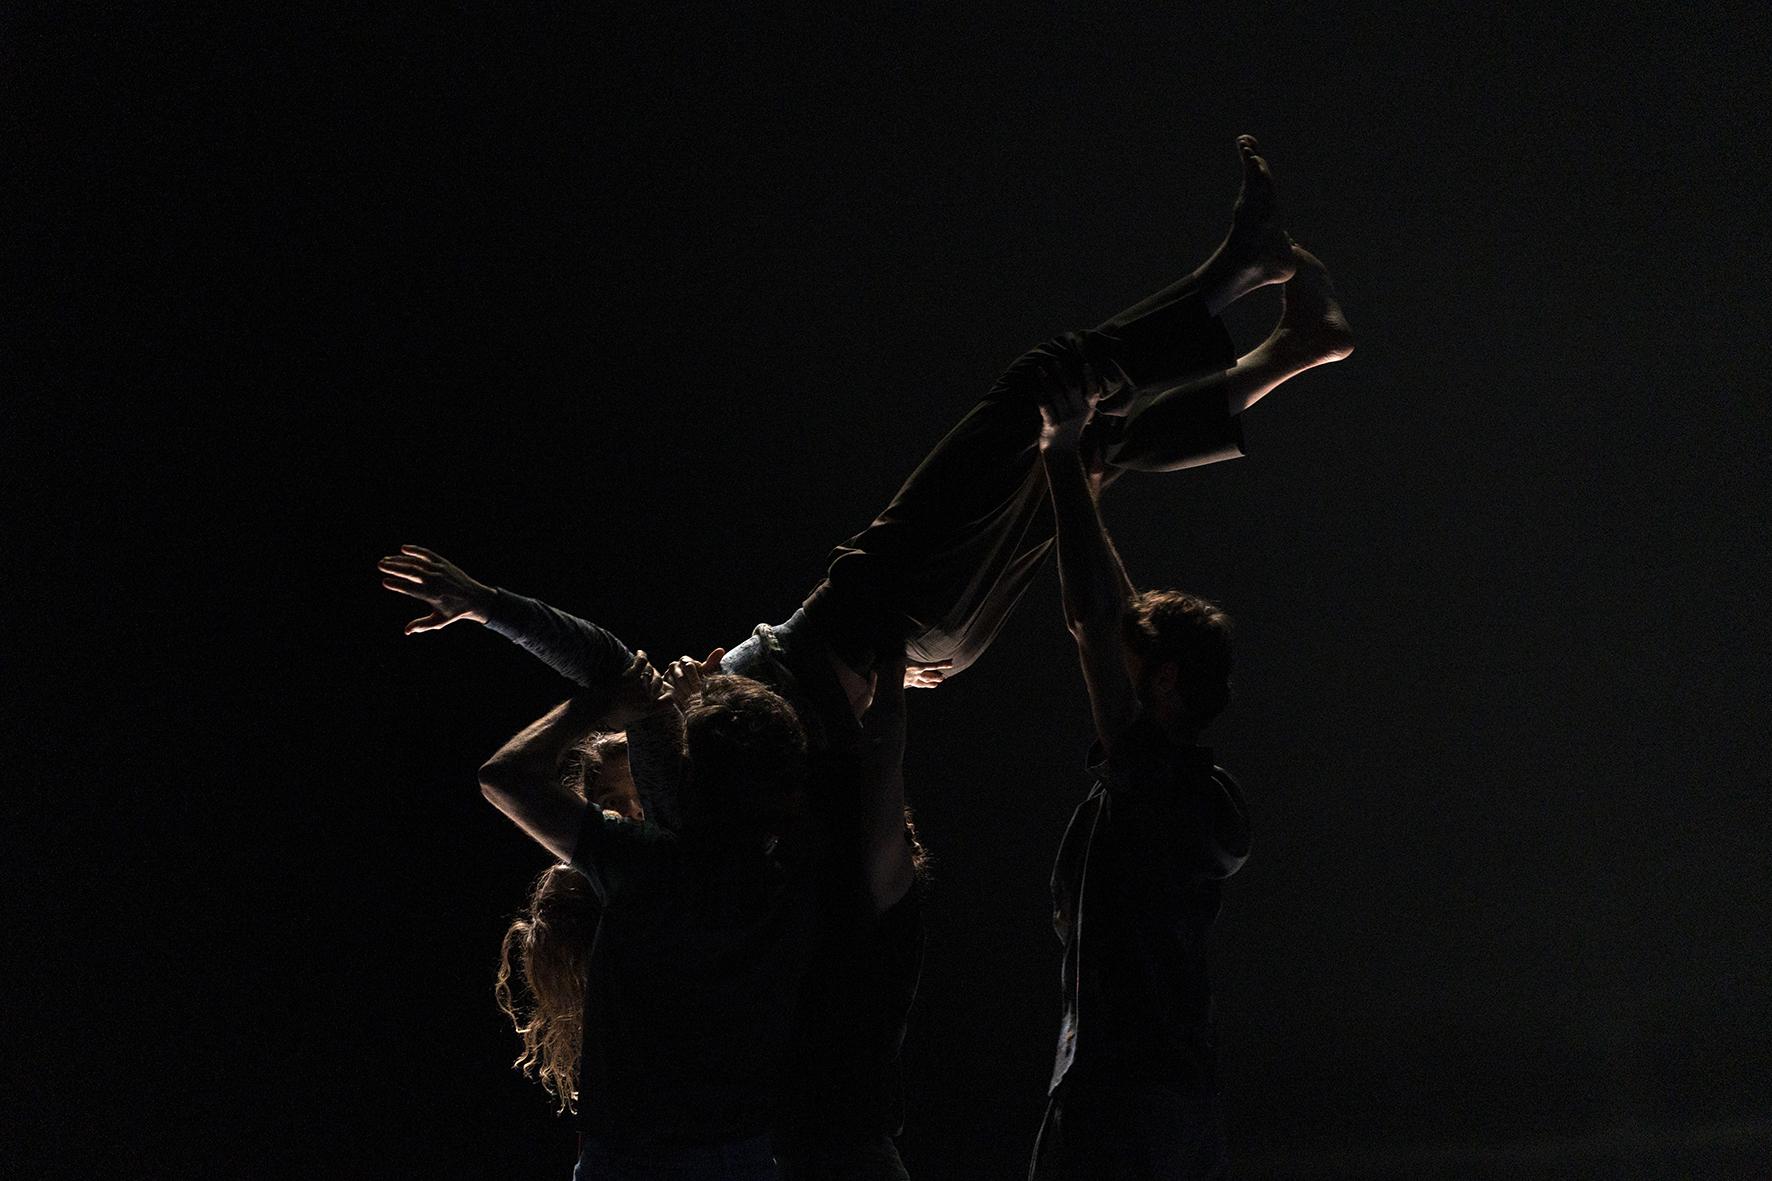 Danseurs portant une personnes en l’air dans un scène sombre